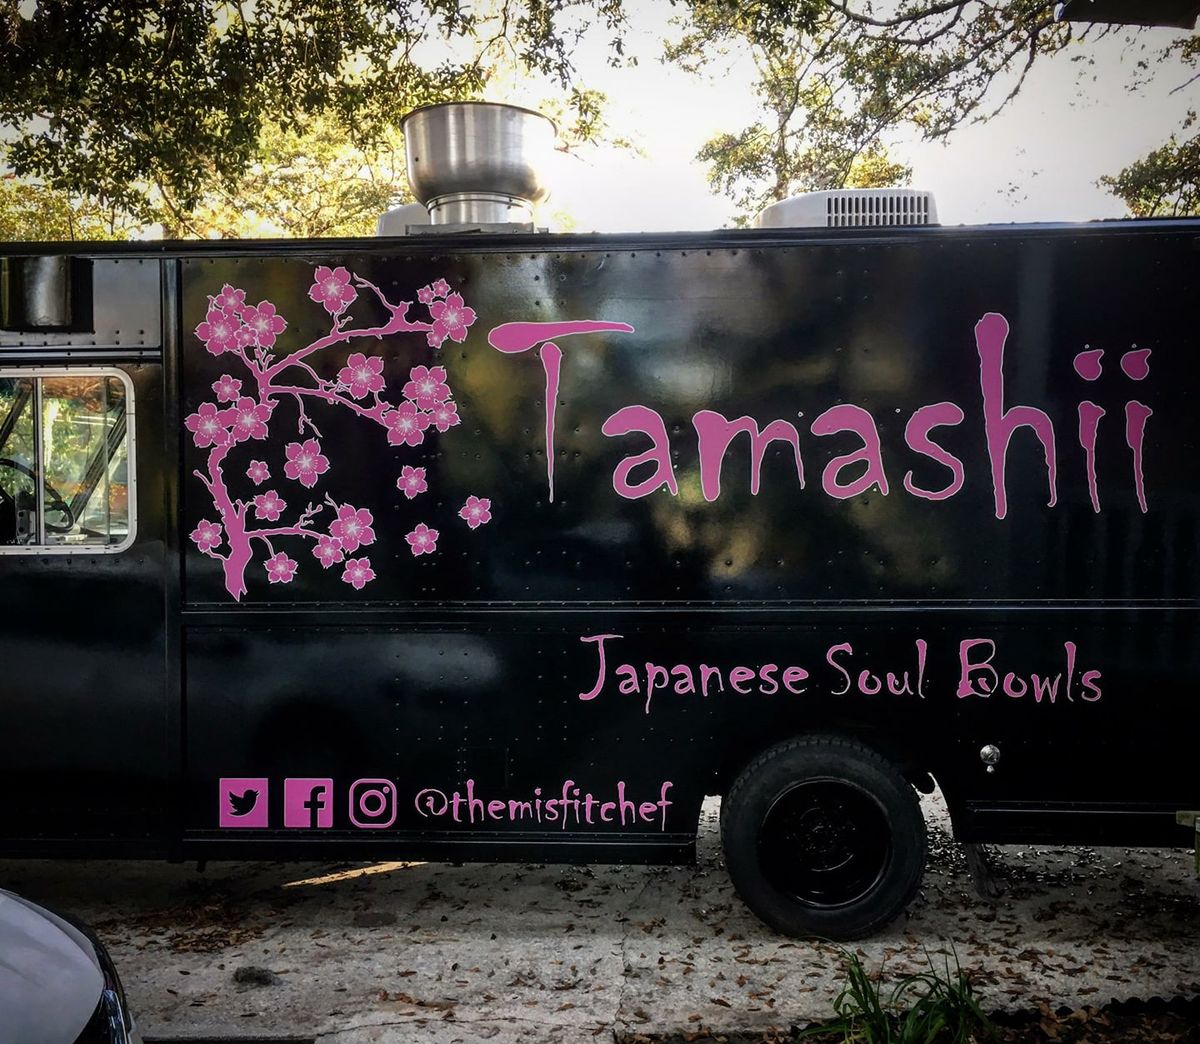 Tamashii Food Truck